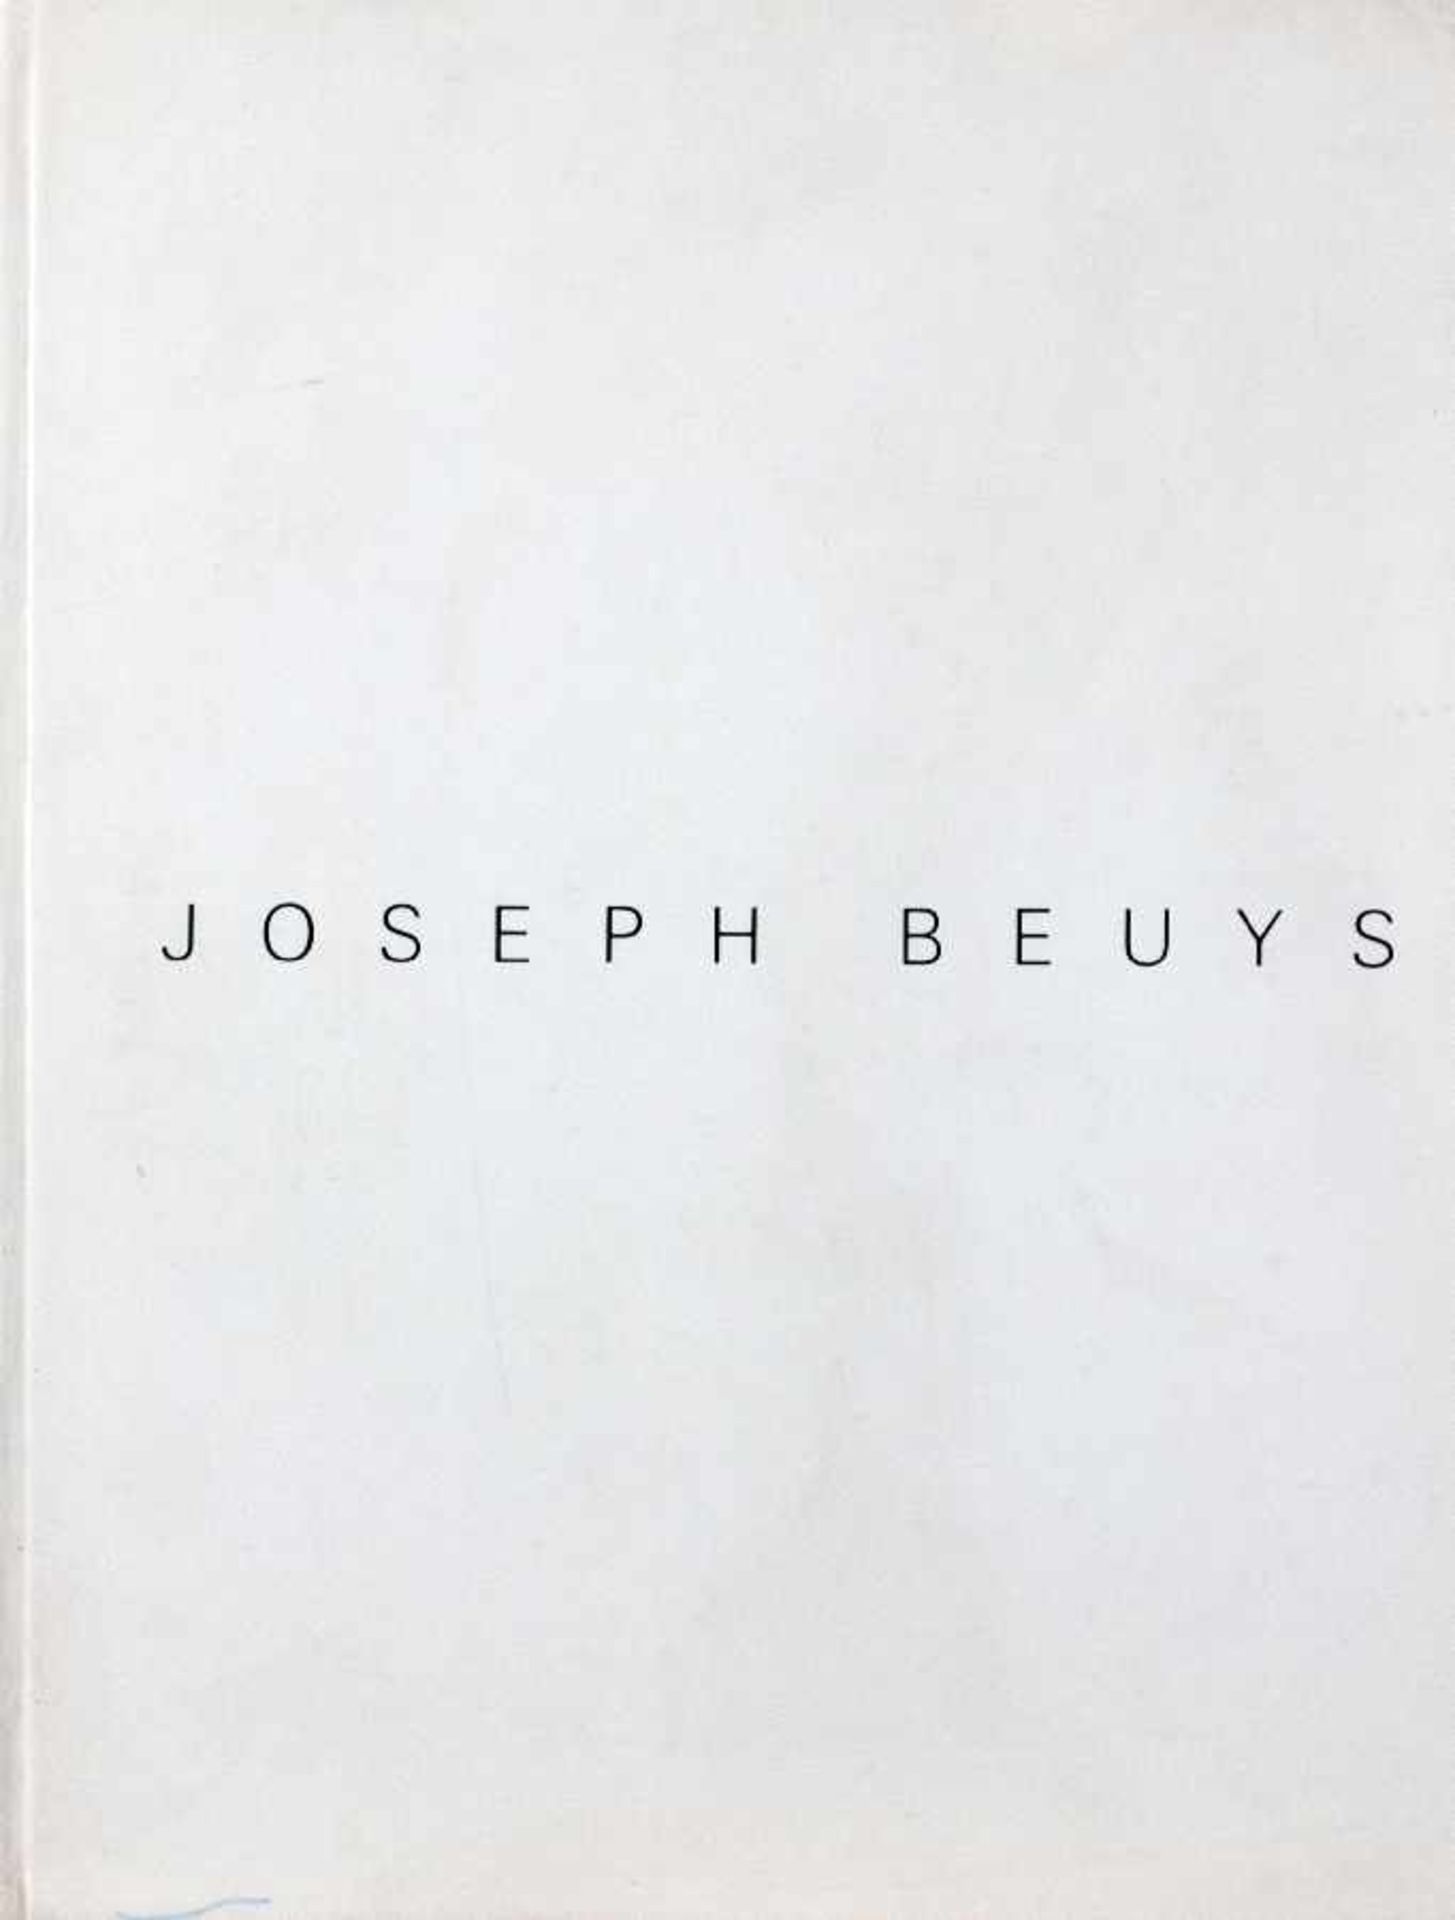 Joseph Beuys 1921 Kleve - 1986 Düsseldorf Zeichnungen 1947-59 I Buch des Schirmer-Verlages Köln, - Image 2 of 3